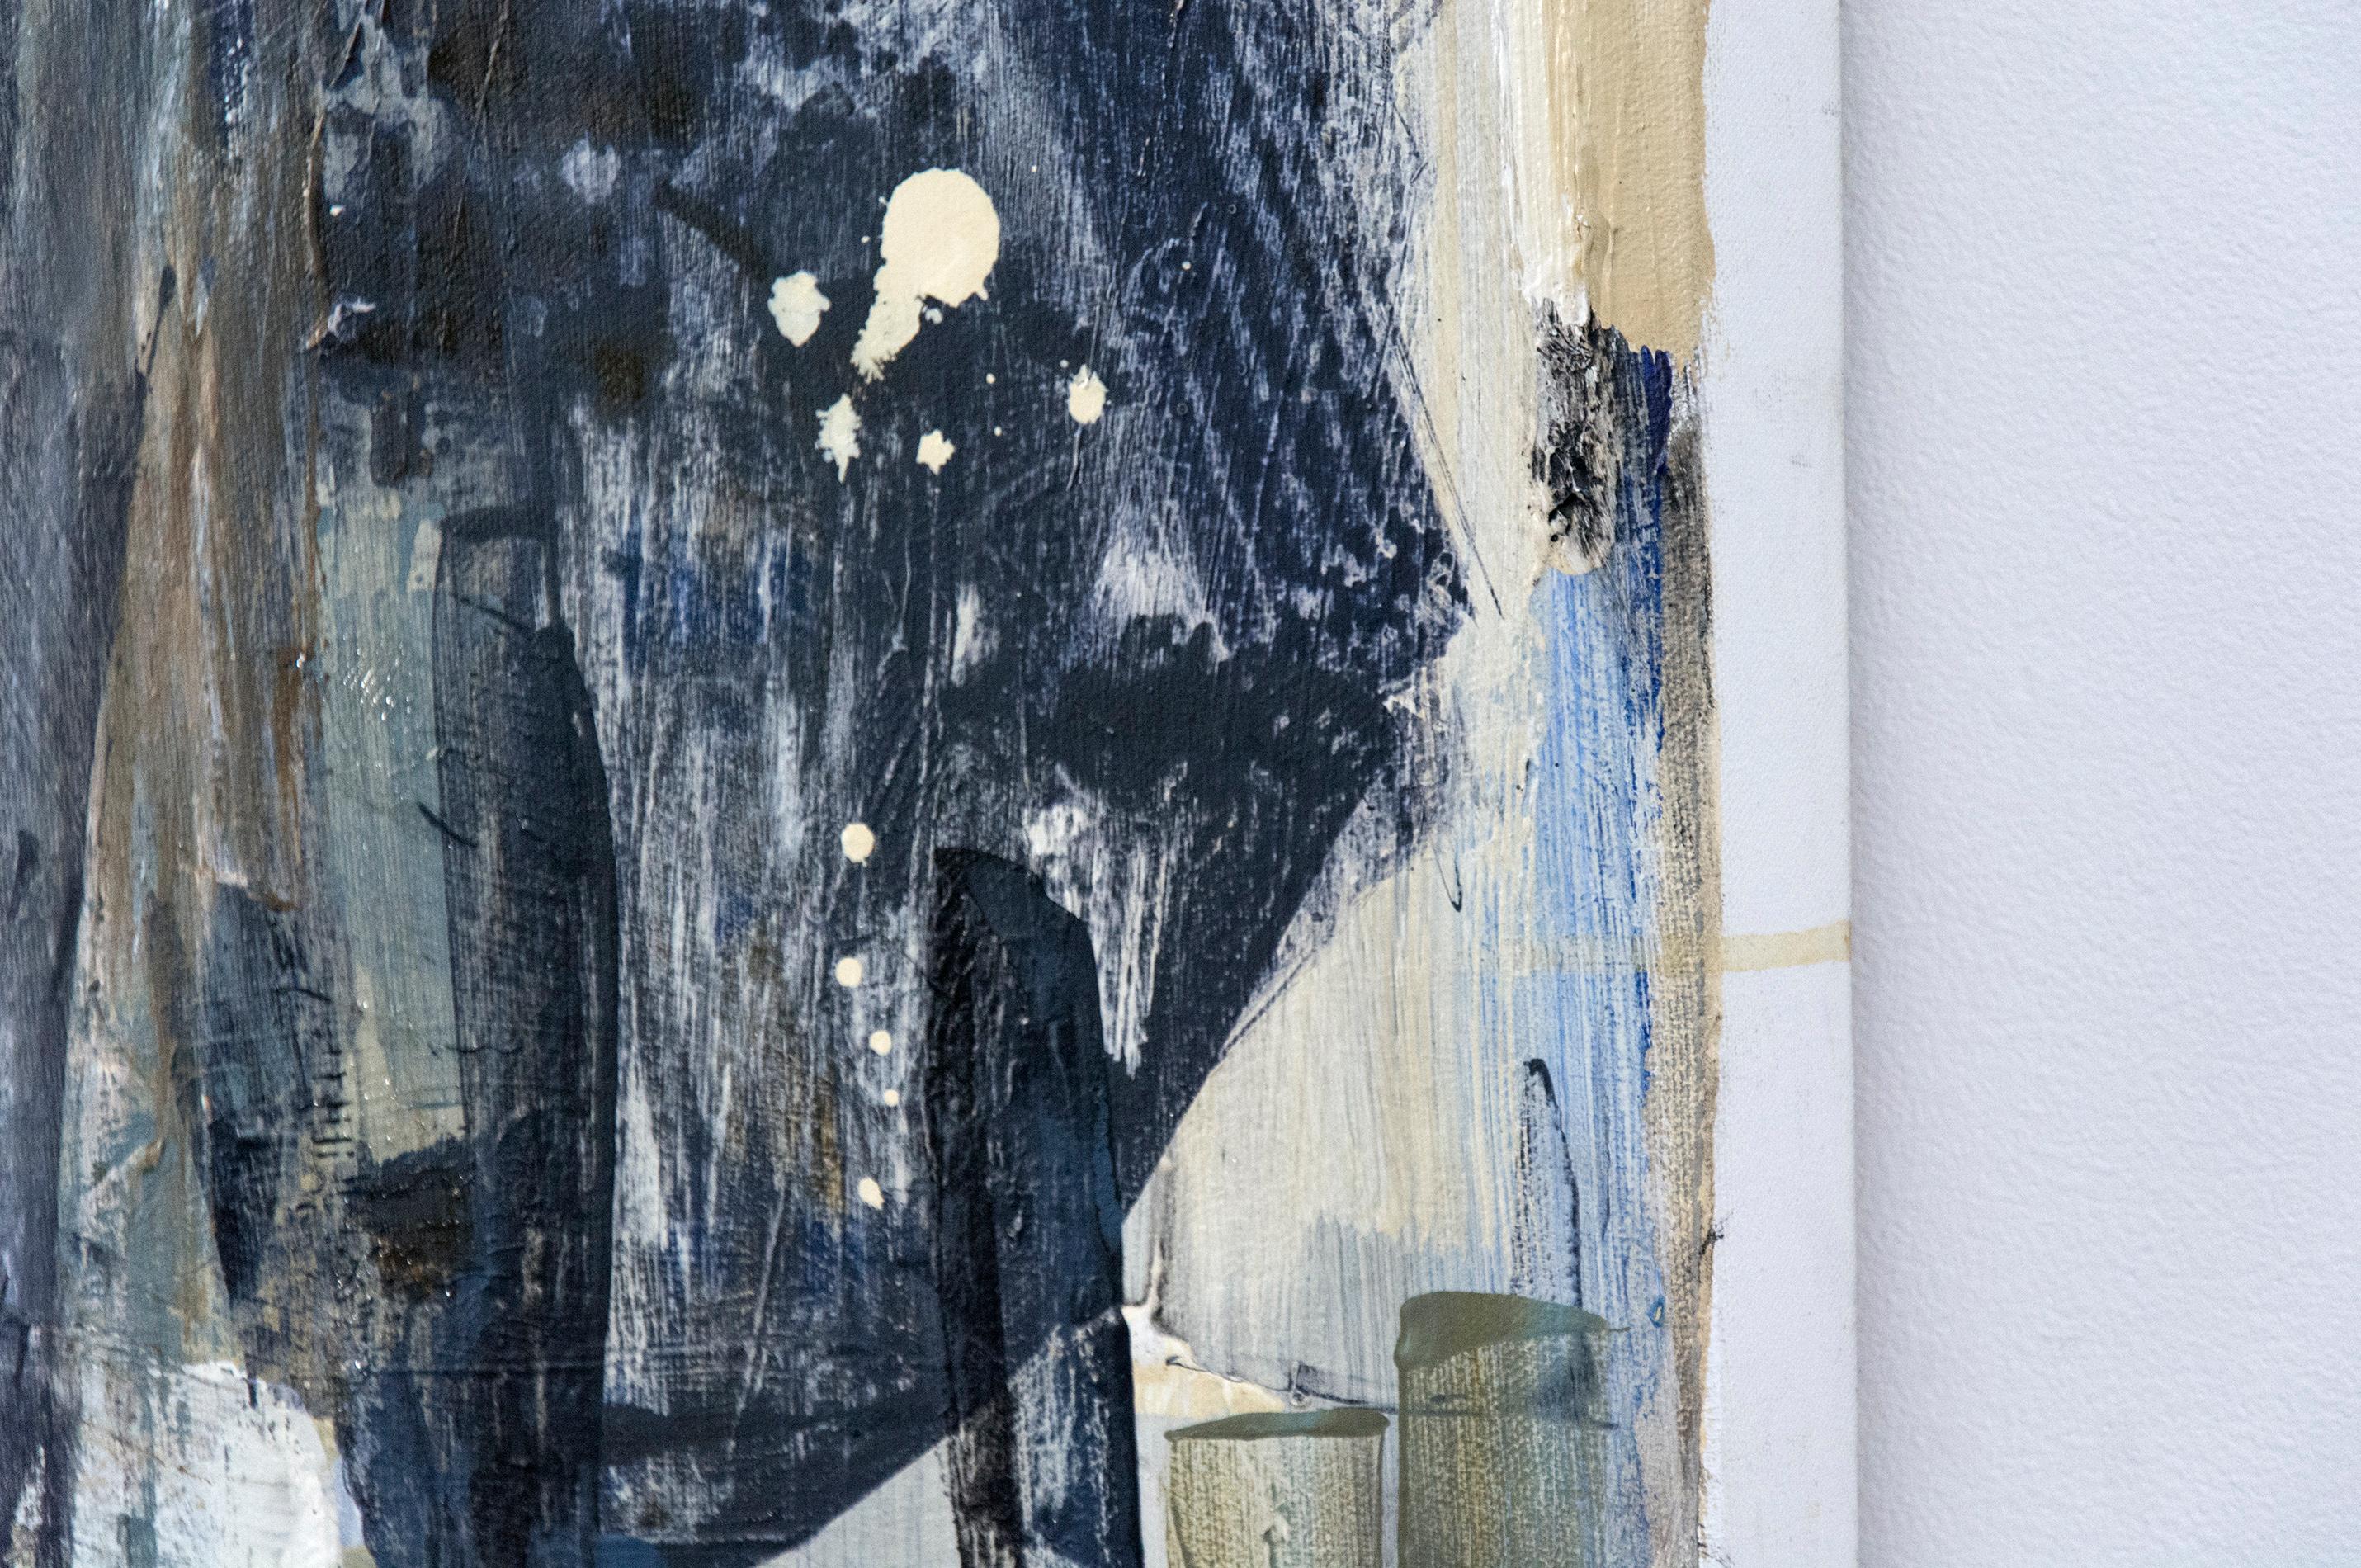 Des blocs peints et collés de terre d'ombre pâle, de gris tourterelle et de blanc forment un patchwork flottant dans cette peinture contemplative de Shireen Kamran.

Shireen Kamran (née en 1954 à Lahore, au Pakistan) crée des œuvres lyriques et